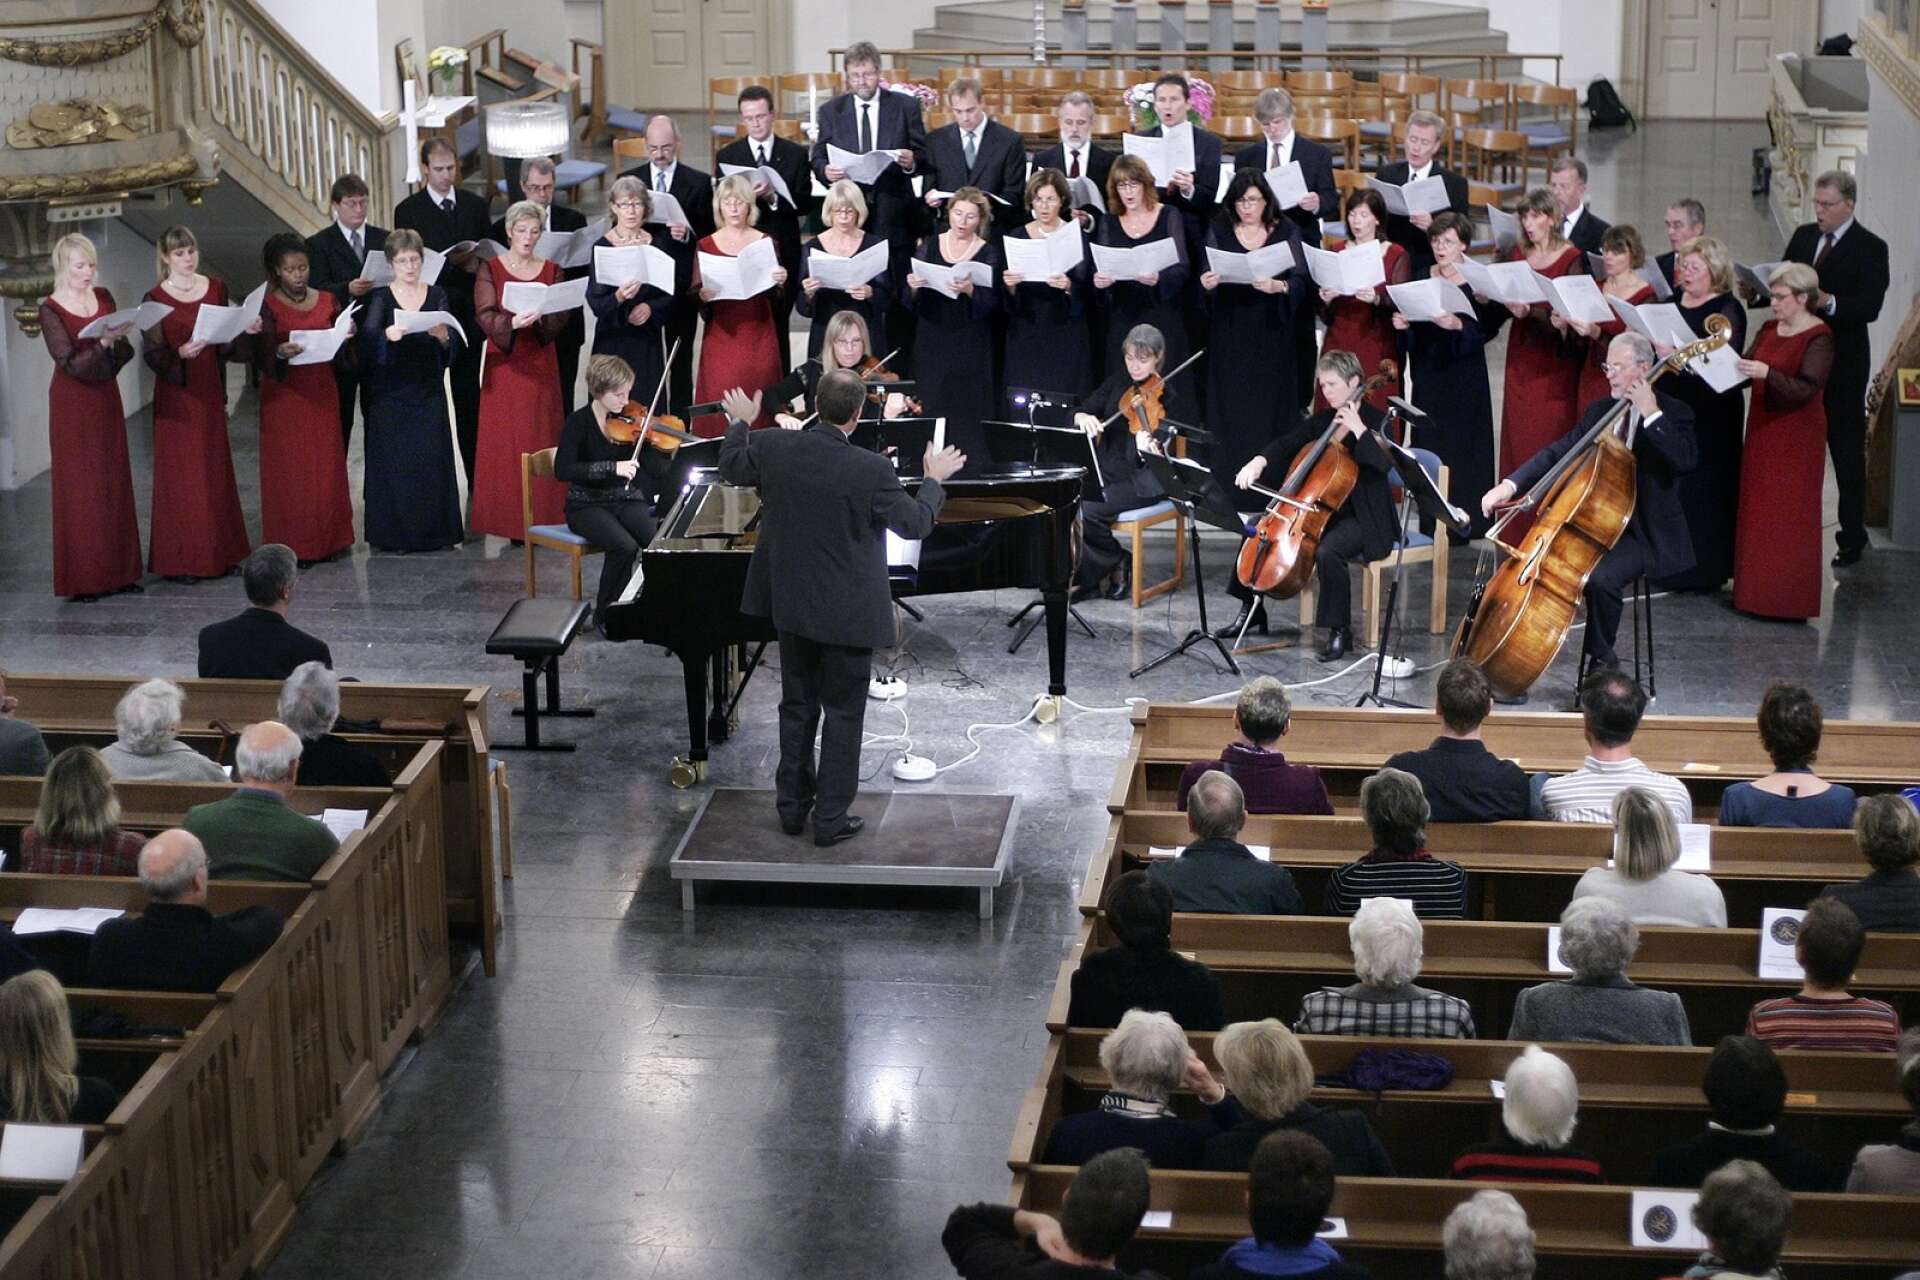 Karlstads kammarkör har börjat öva igen och i dag, lördag, håller de konsert i Domkyrkan. Bilden är från en konsert i Domkyrkan tillsammans med kompositören Steve Dobrogosz.